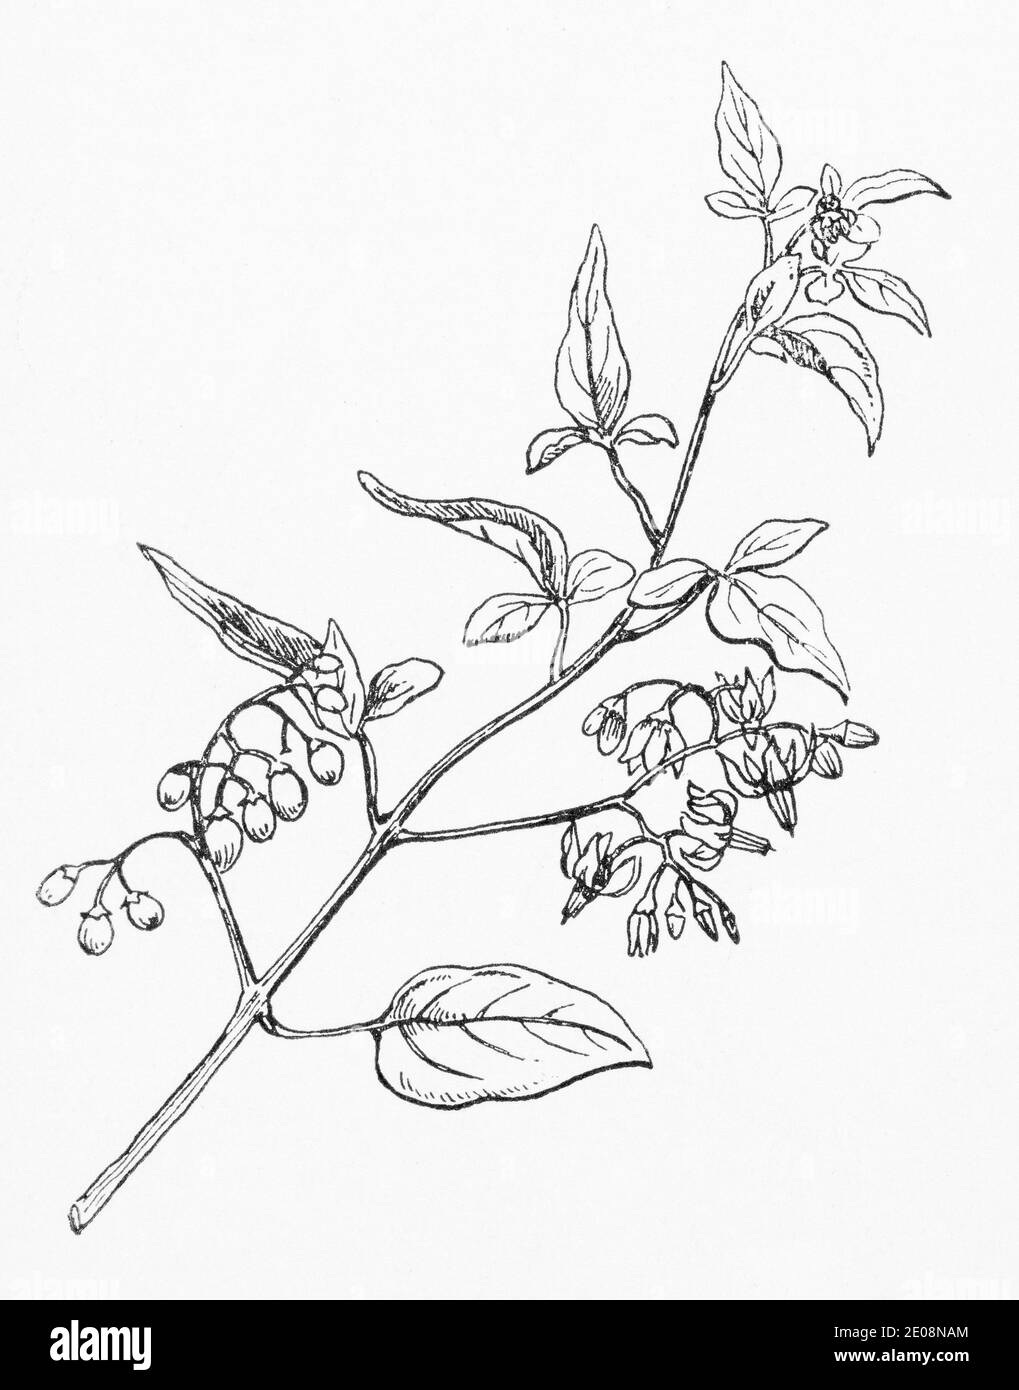 Ancienne gravure d'illustration botanique de Solanum dulcamara / Woody NightShade. Plante médicinale traditionnelle. Voir Remarques Banque D'Images